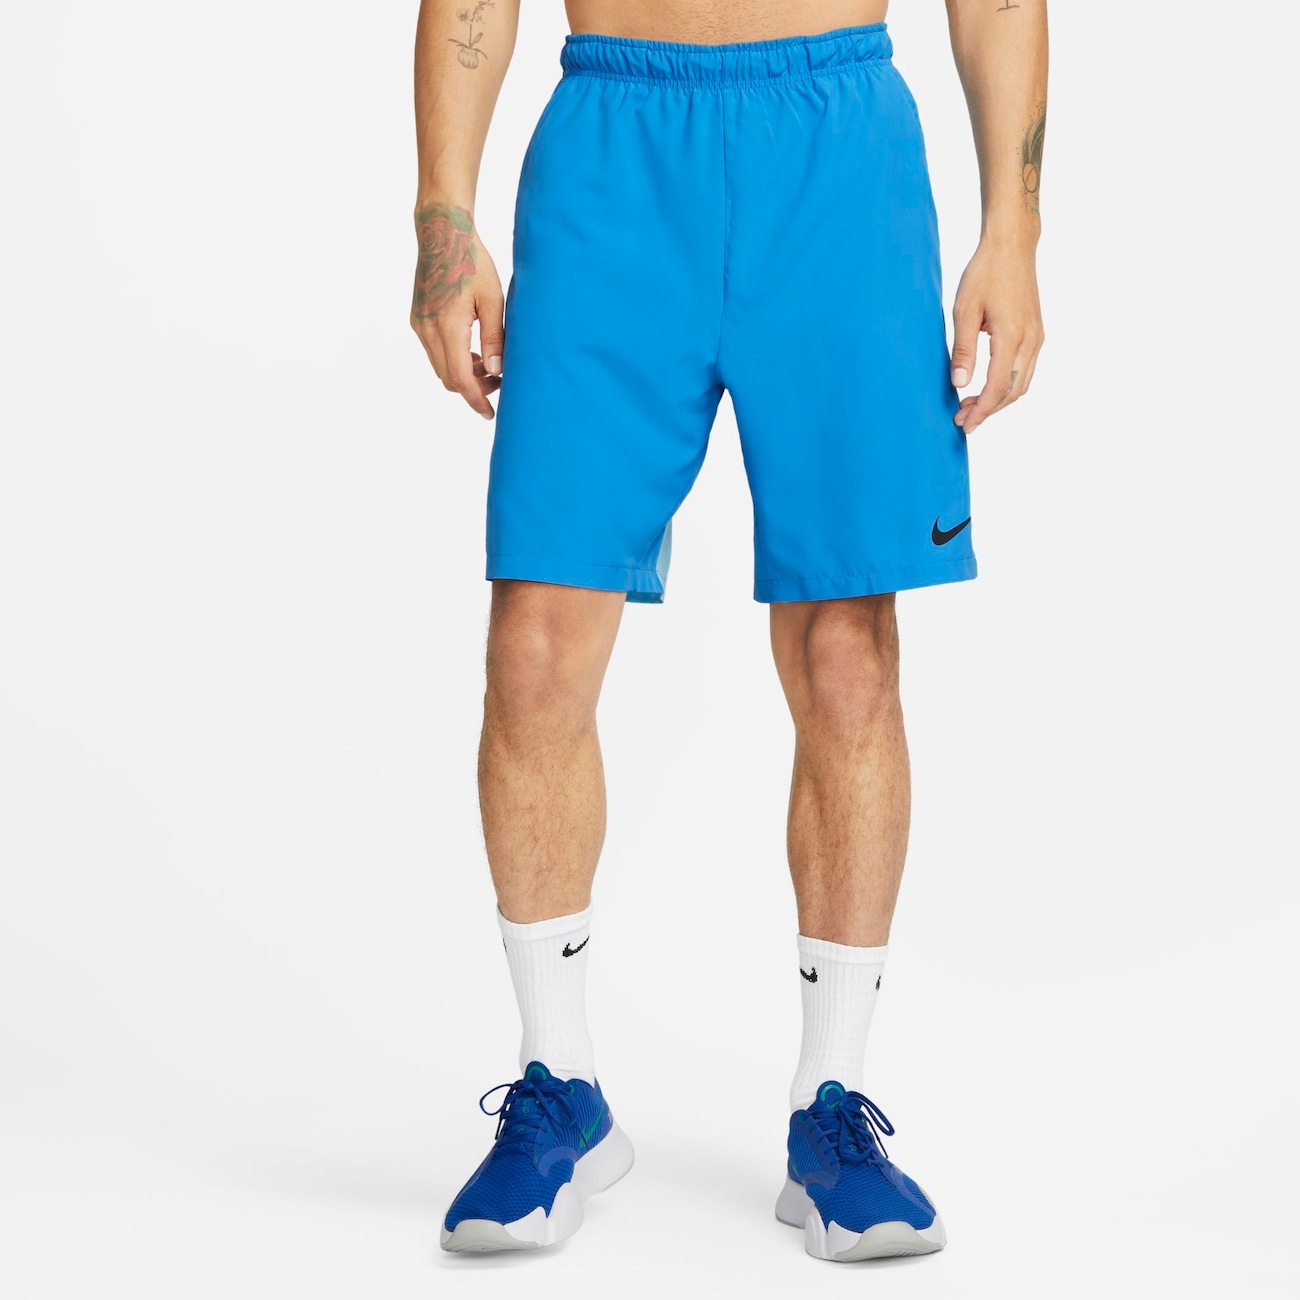 Shorts Nike Woven Flow Masculino Dz4716-010